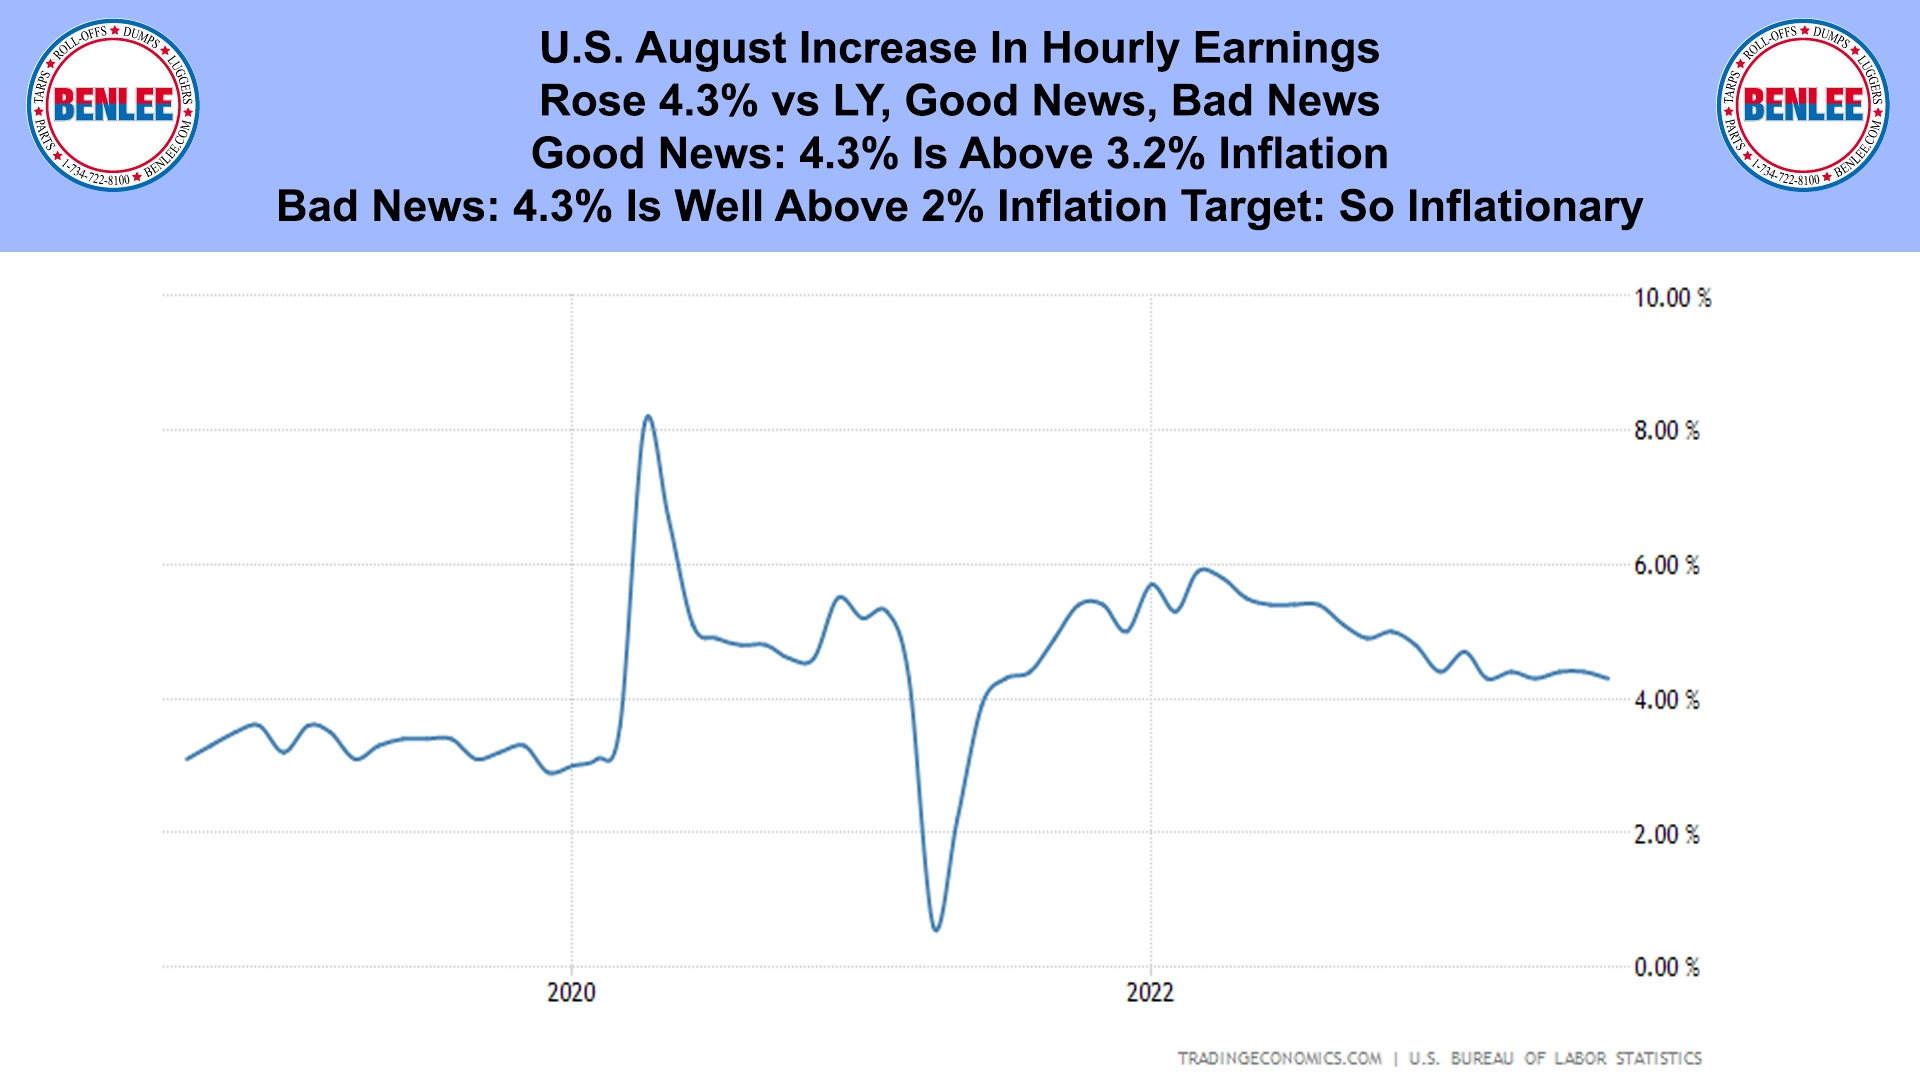 U.S. August Increase In Hourly Earnings